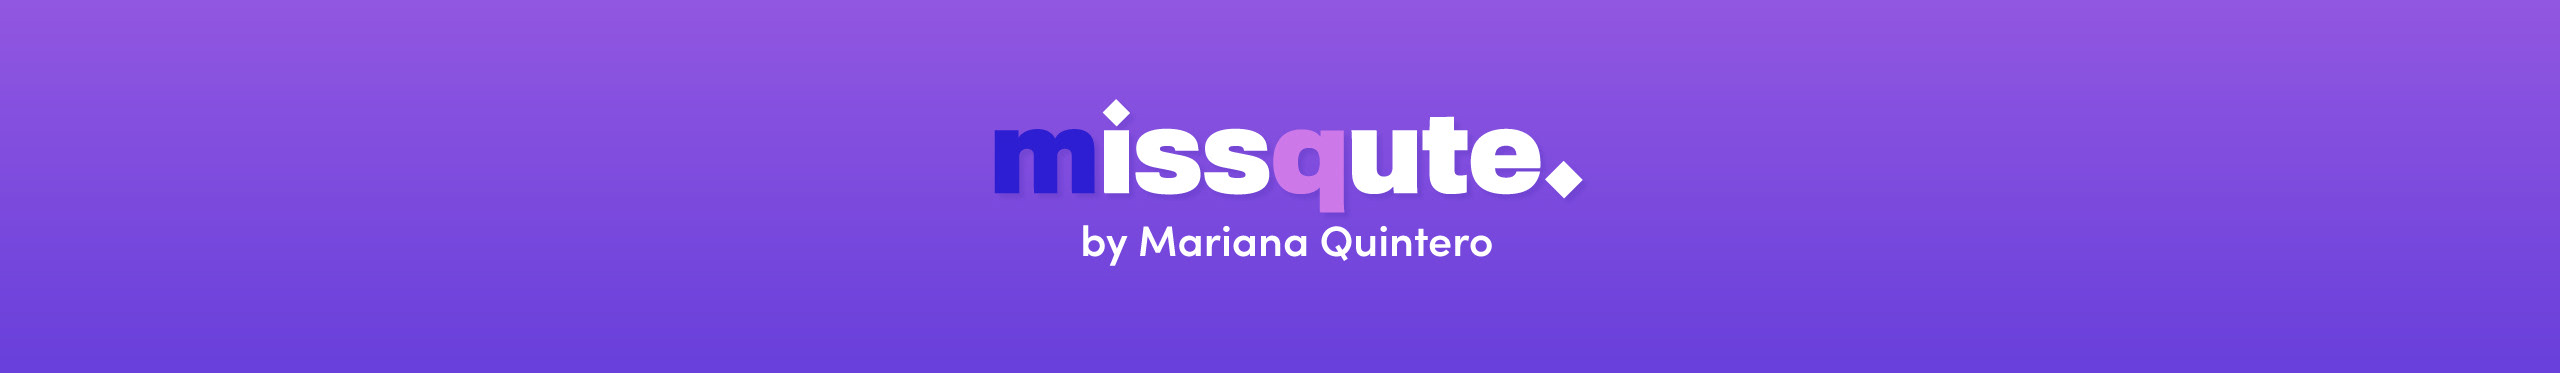 Mariana Quintero's profile banner